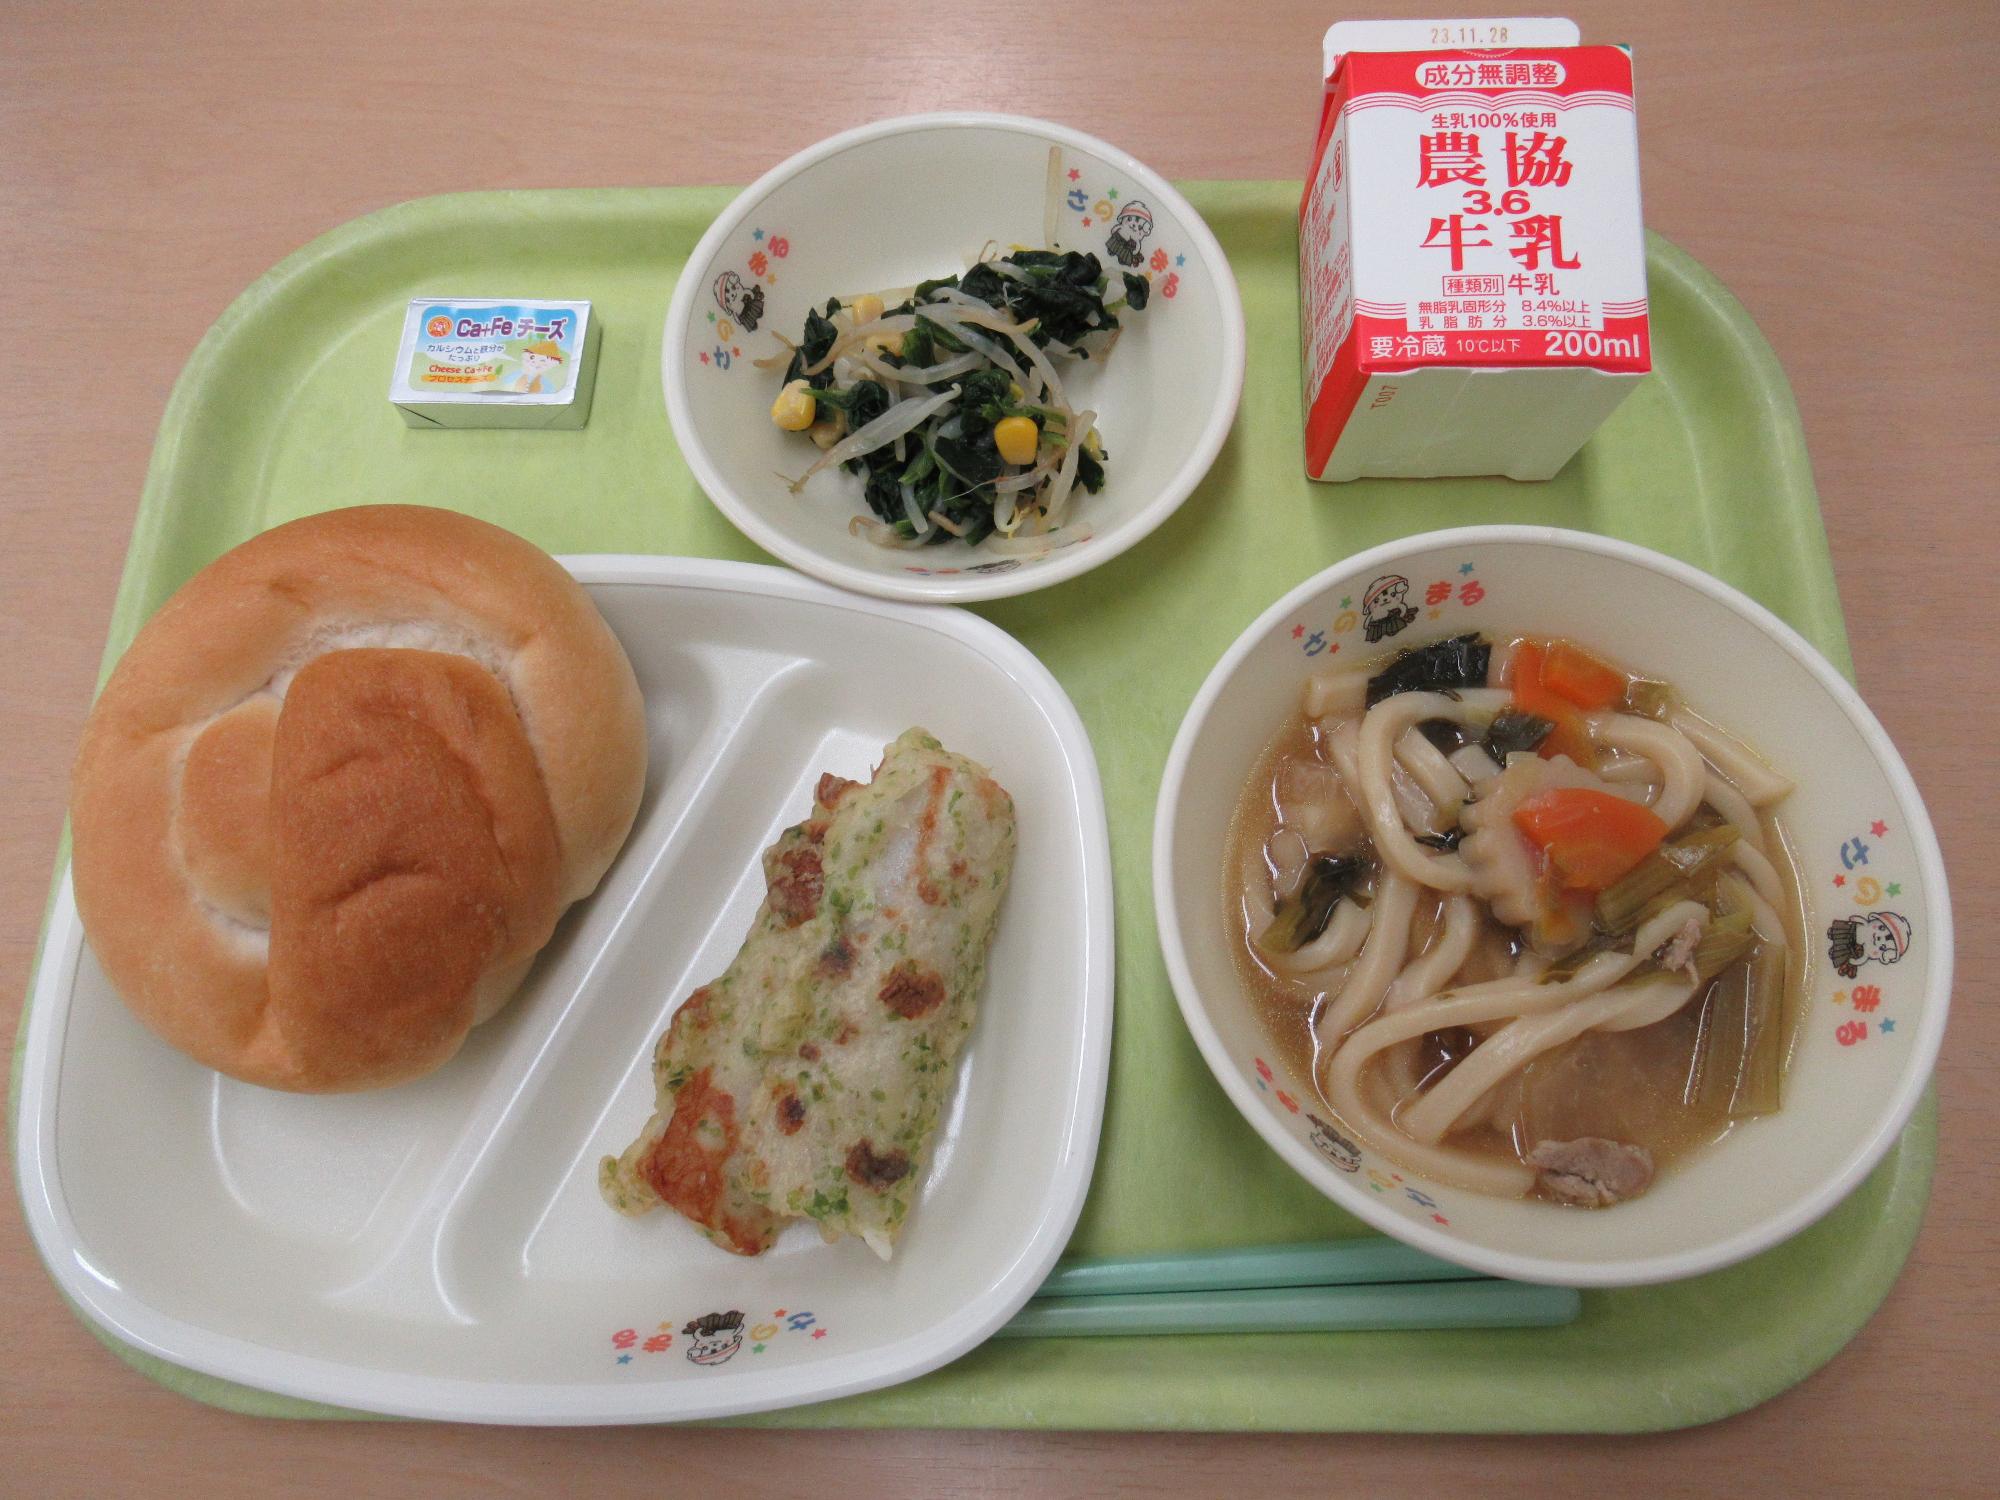 令和5年11月17日南部学校給食センター給食写真